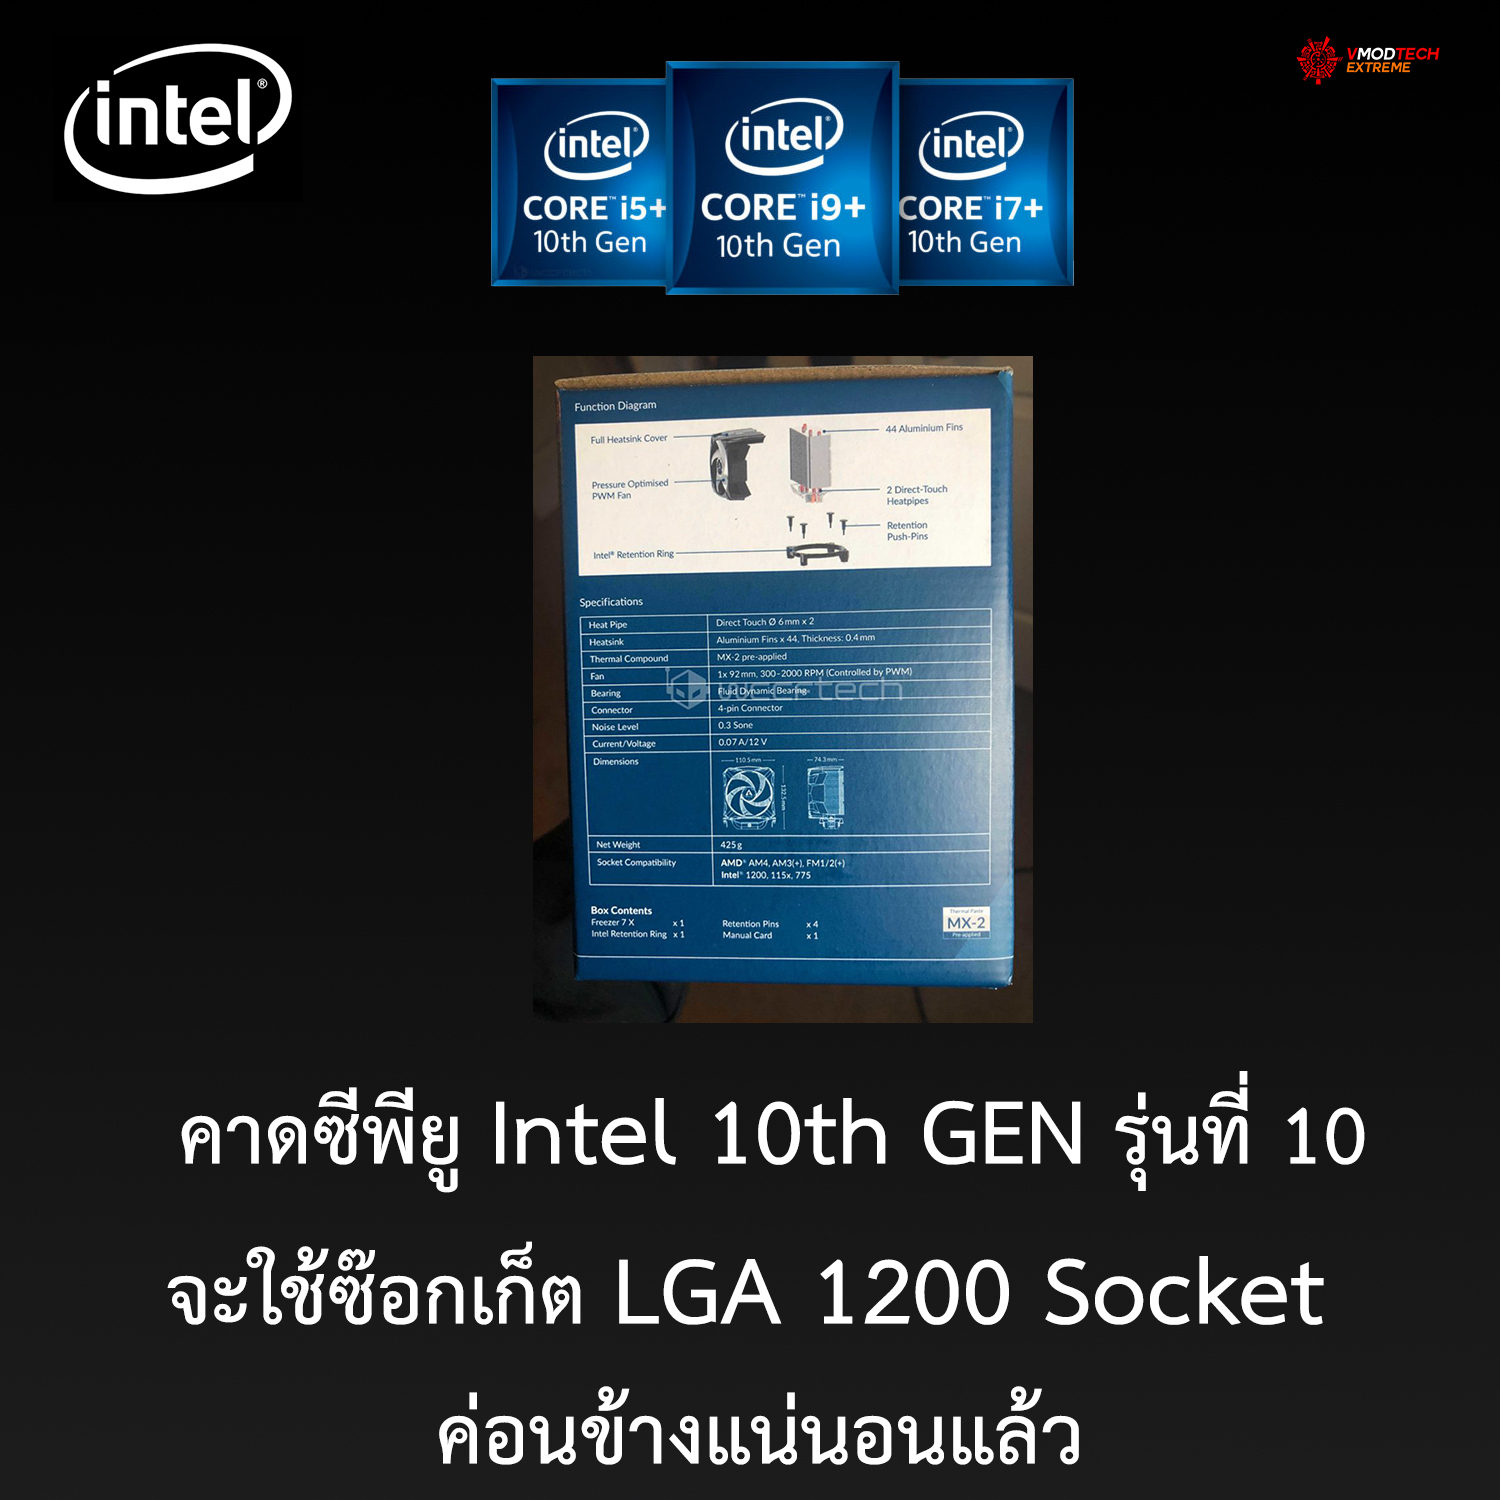 คาดซีพียู Intel 10th GEN รุ่นที่ 10นั้นจะใช้ซ๊อกเก็ต LGA 1200 Socket ค่อนข้างแน่นอนแล้ว